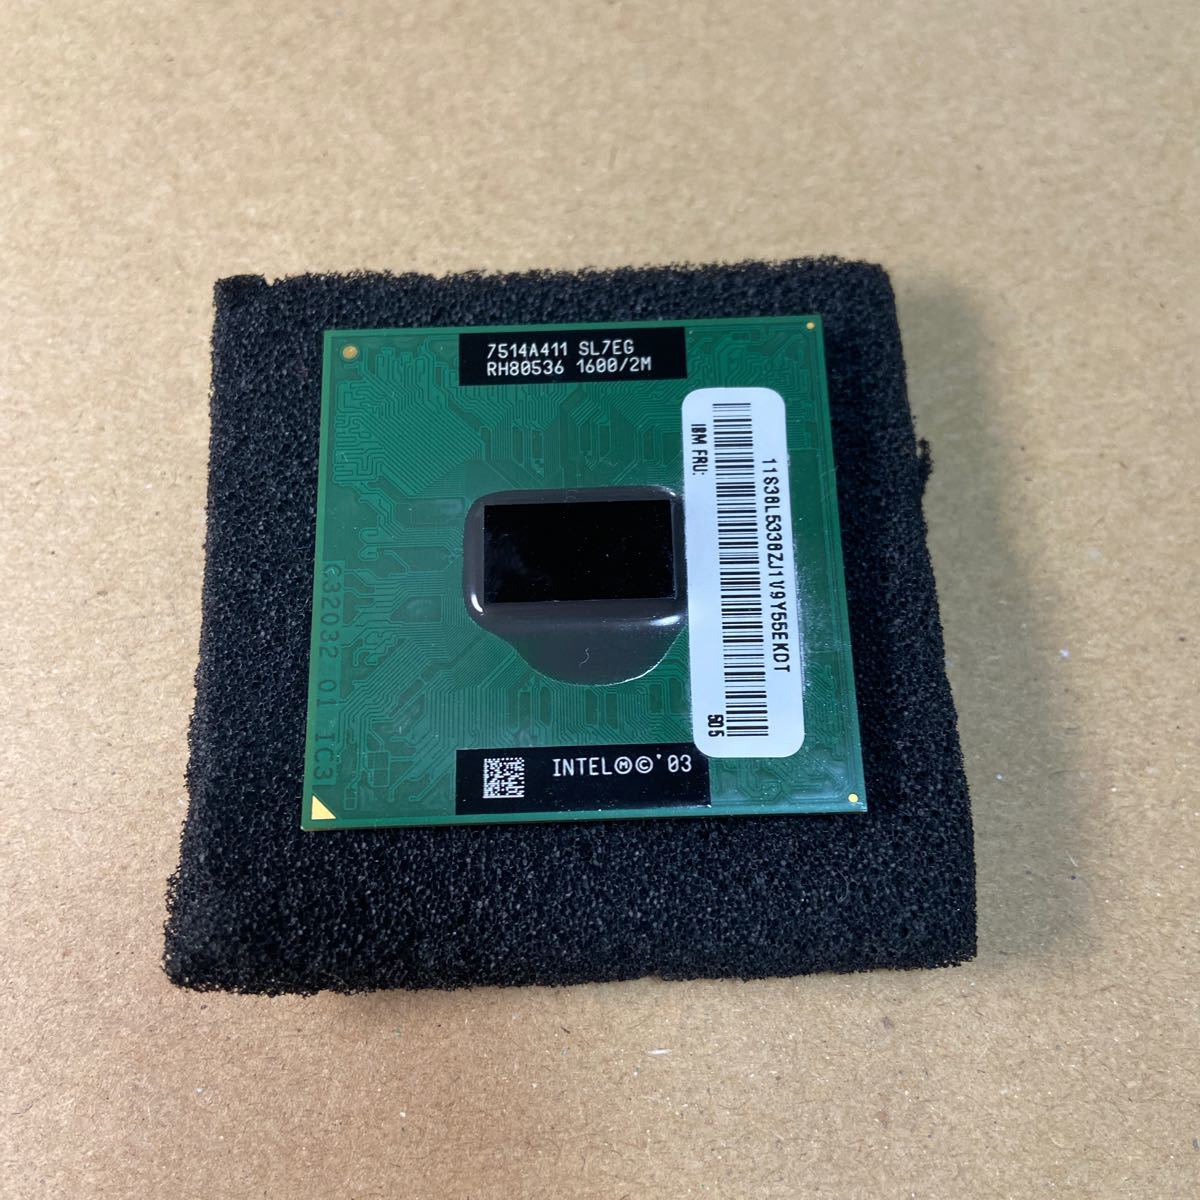 インテル Pentium M プロセッサー 725 2M キャッシュ、1.60A GHz、400 MHz_画像1